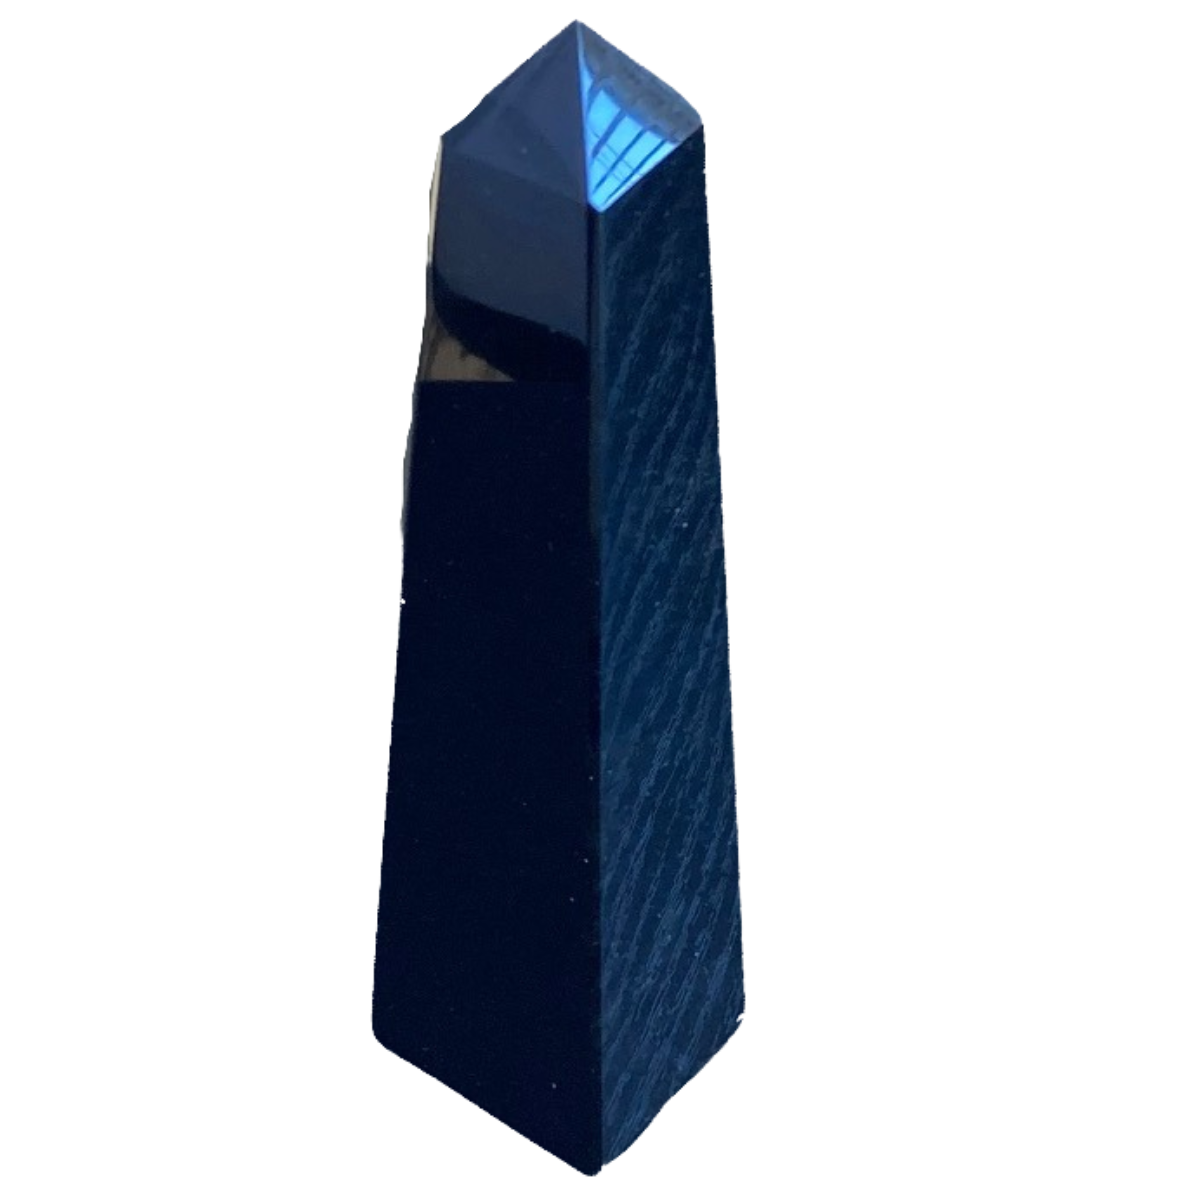 6" x 1.8" Obsidian Obelisk